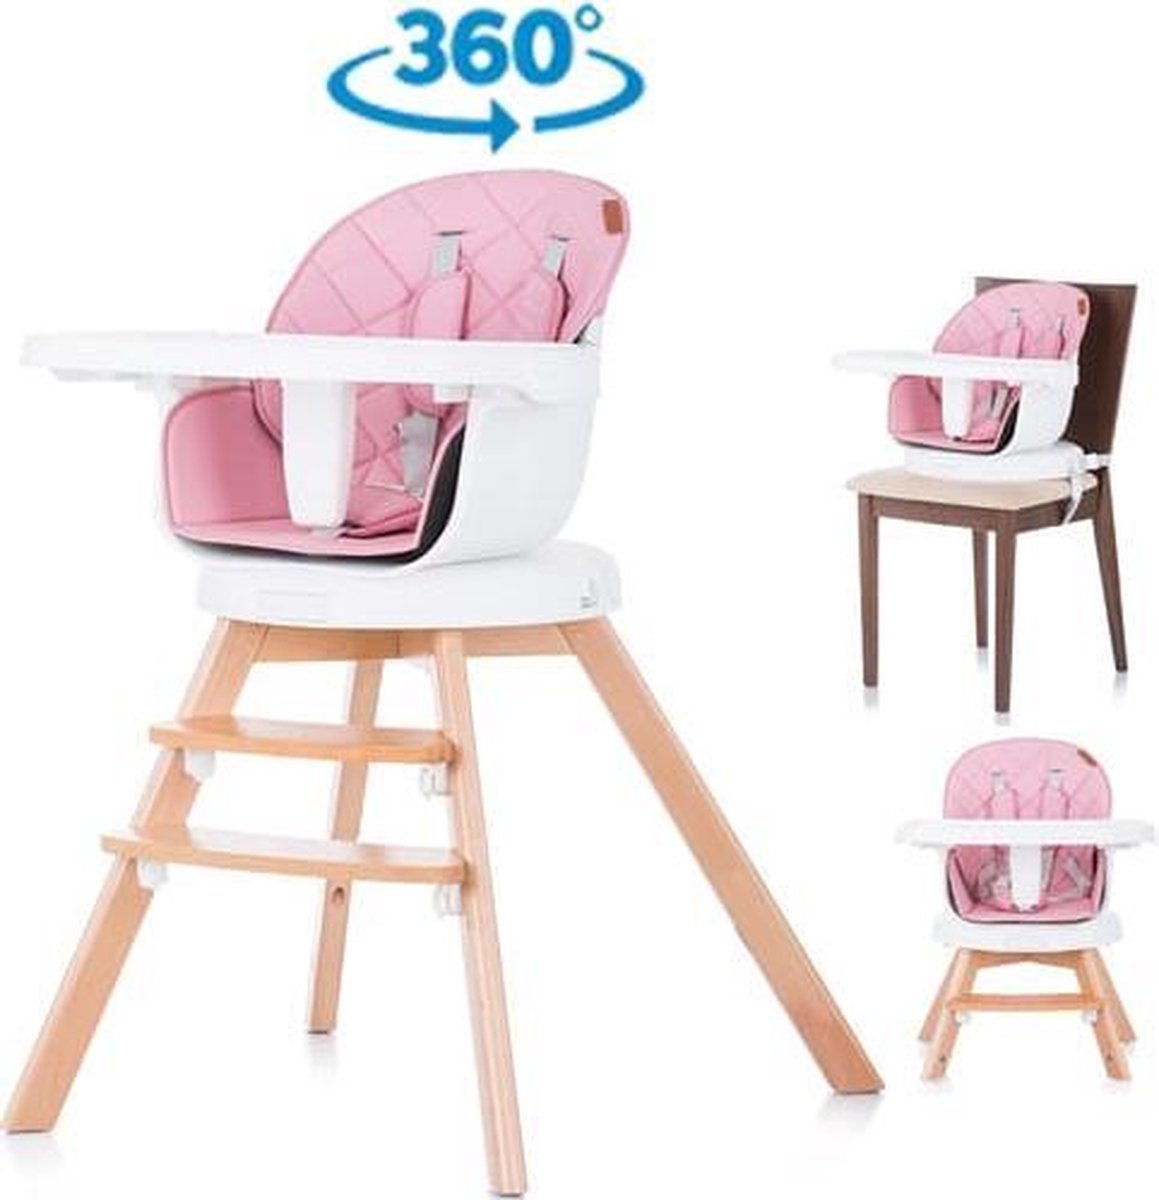 Kinderstoel 3 in 1 Rotto roze 360 graden draaibaar, geschikt vanaf 6+ maanden